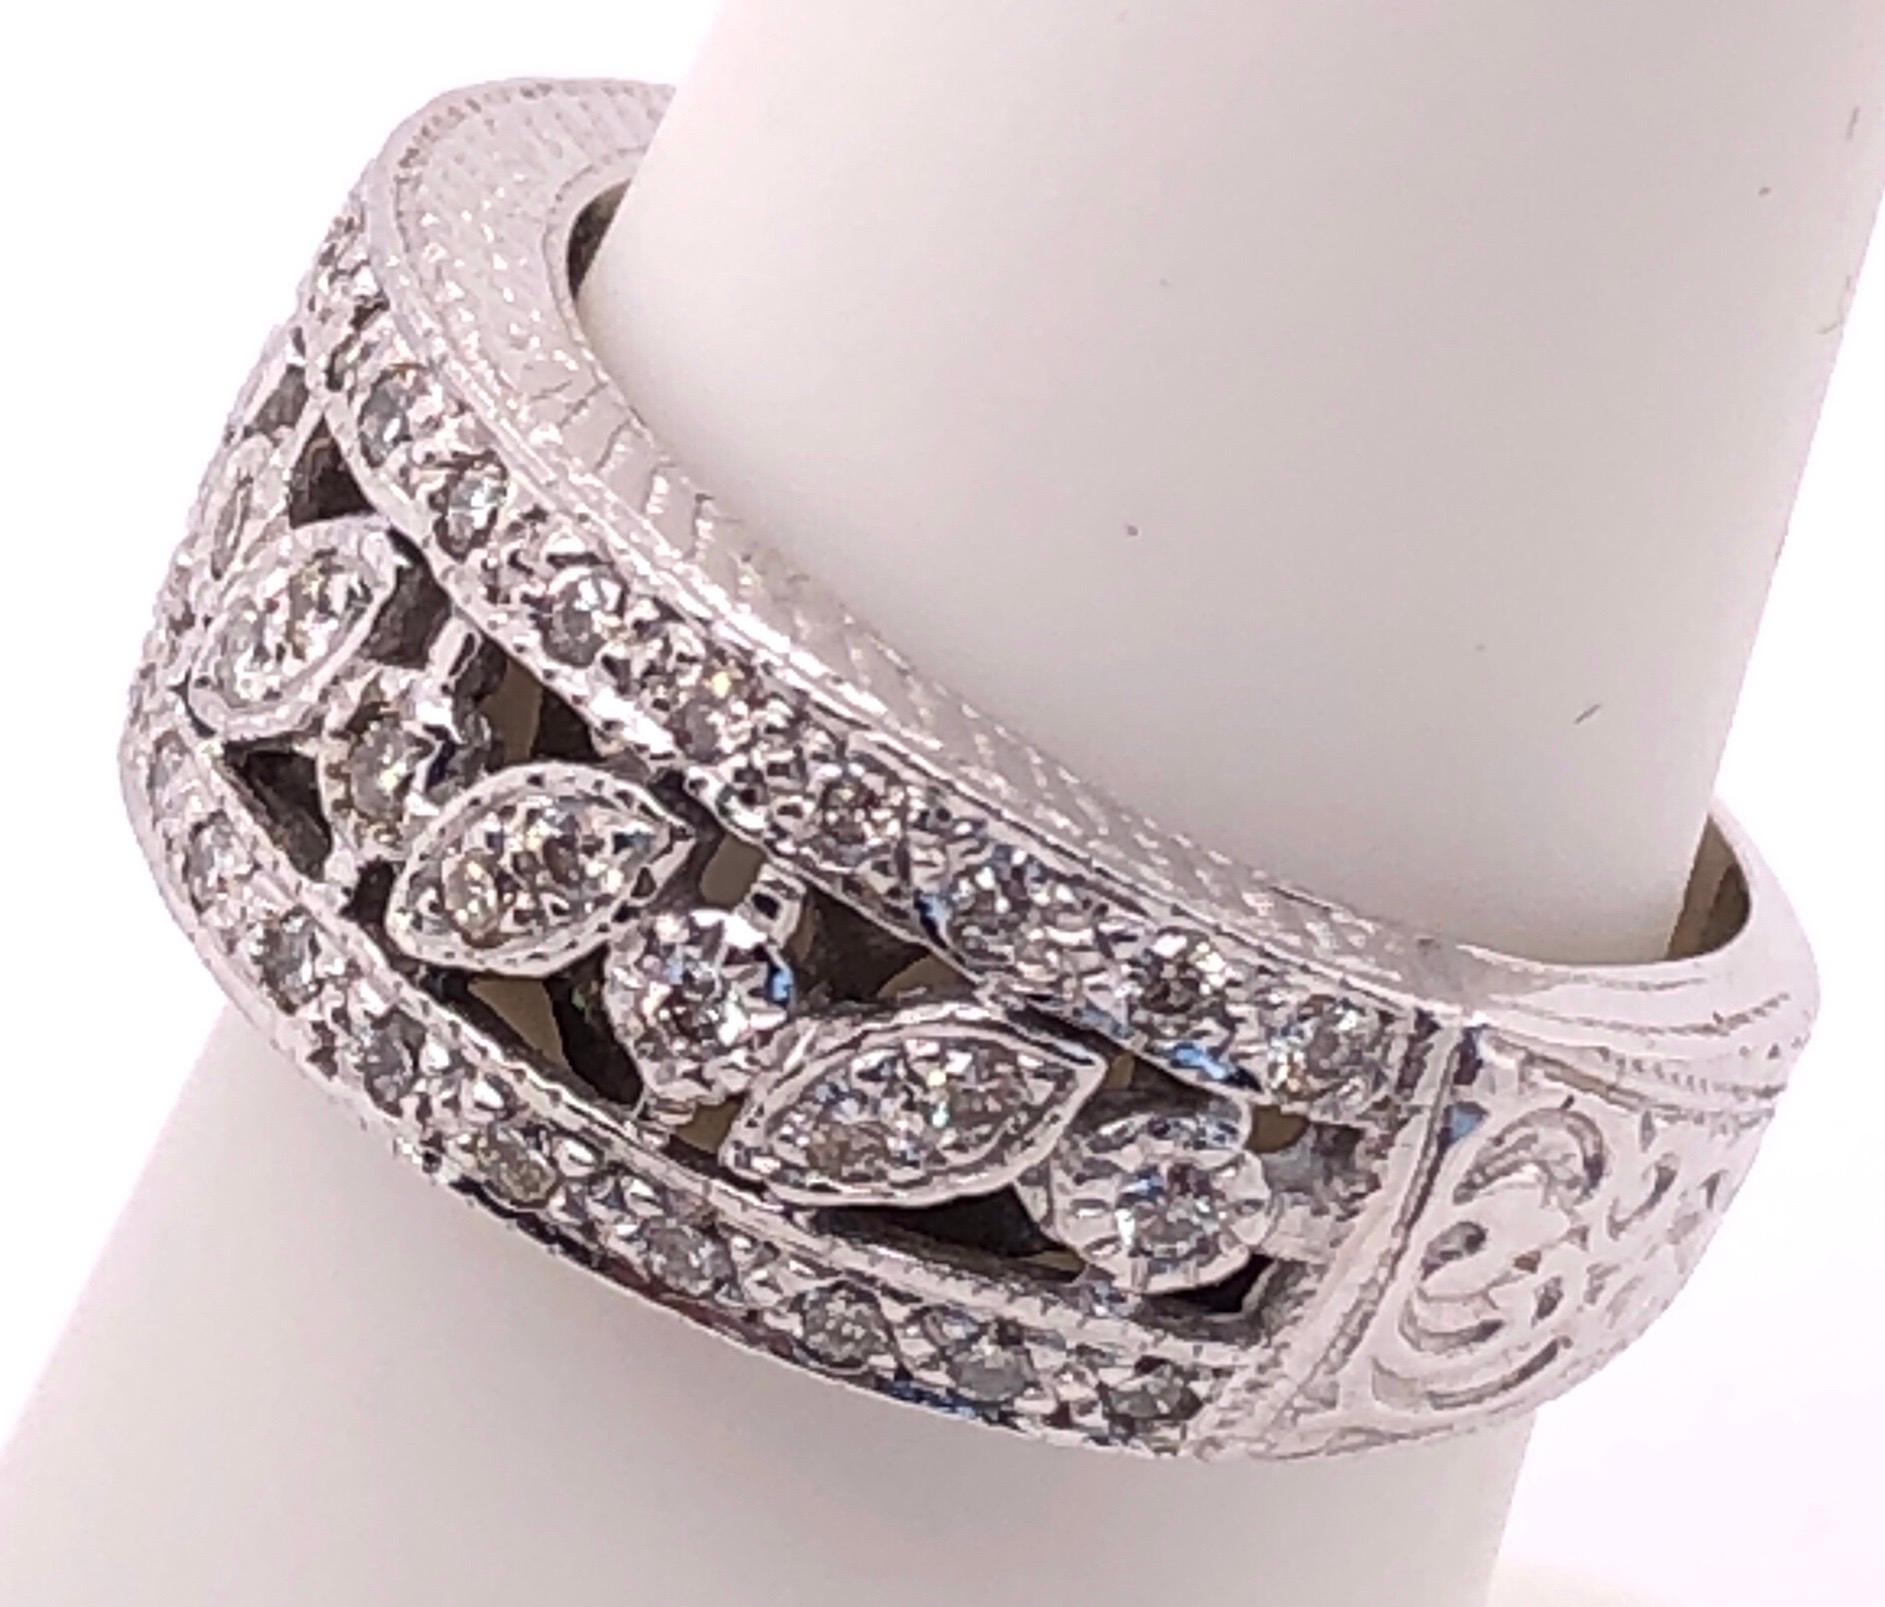 14 Karat White Gold Diamond Wedding Band Bridal Ring Size 5.5
5.69 grams total weight